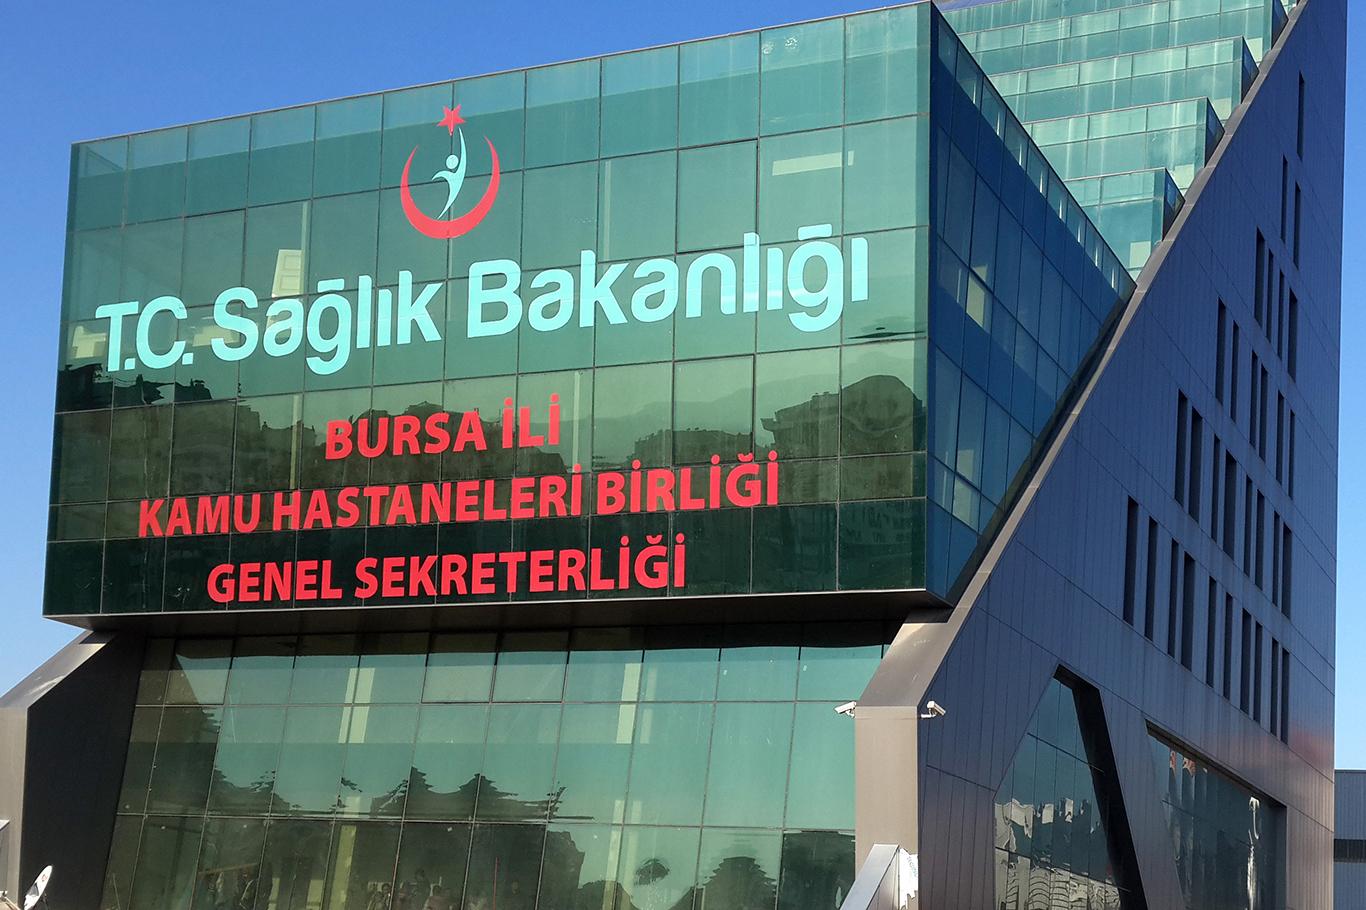 Bursa’da sağlıkta şiddet sanıklarına ceza yağdı